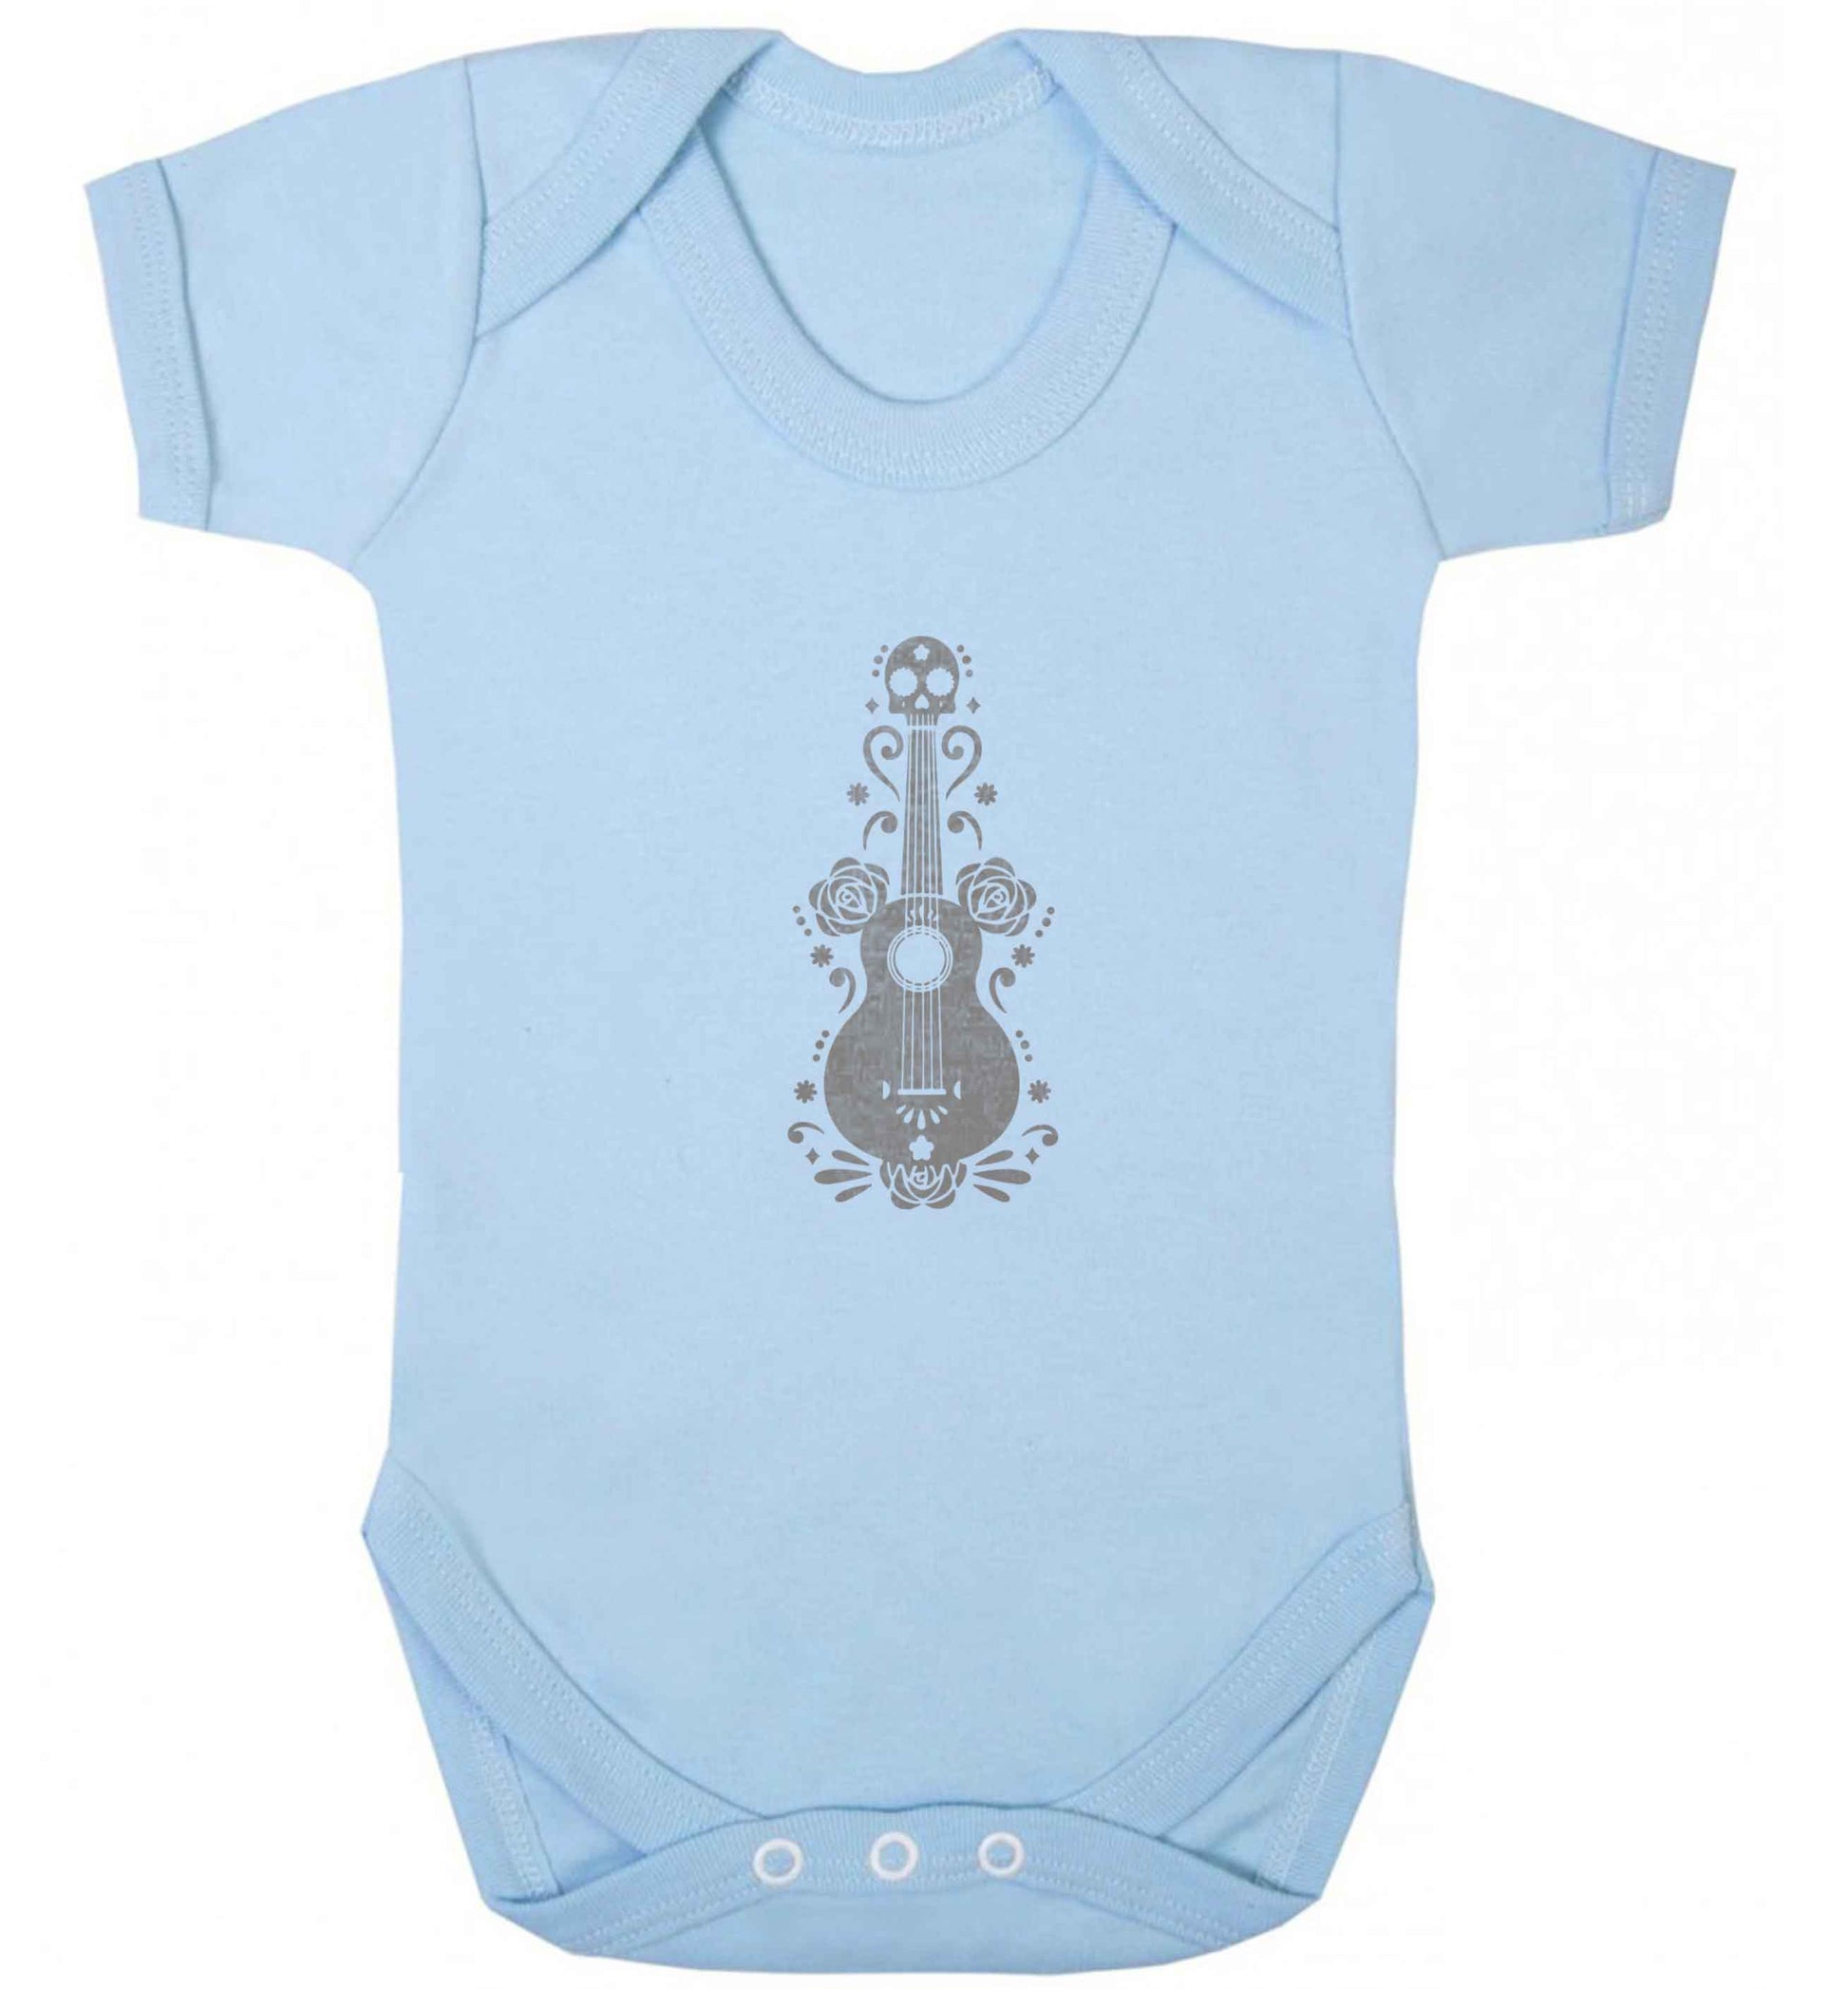 Guitar skull illustration baby vest pale blue 18-24 months